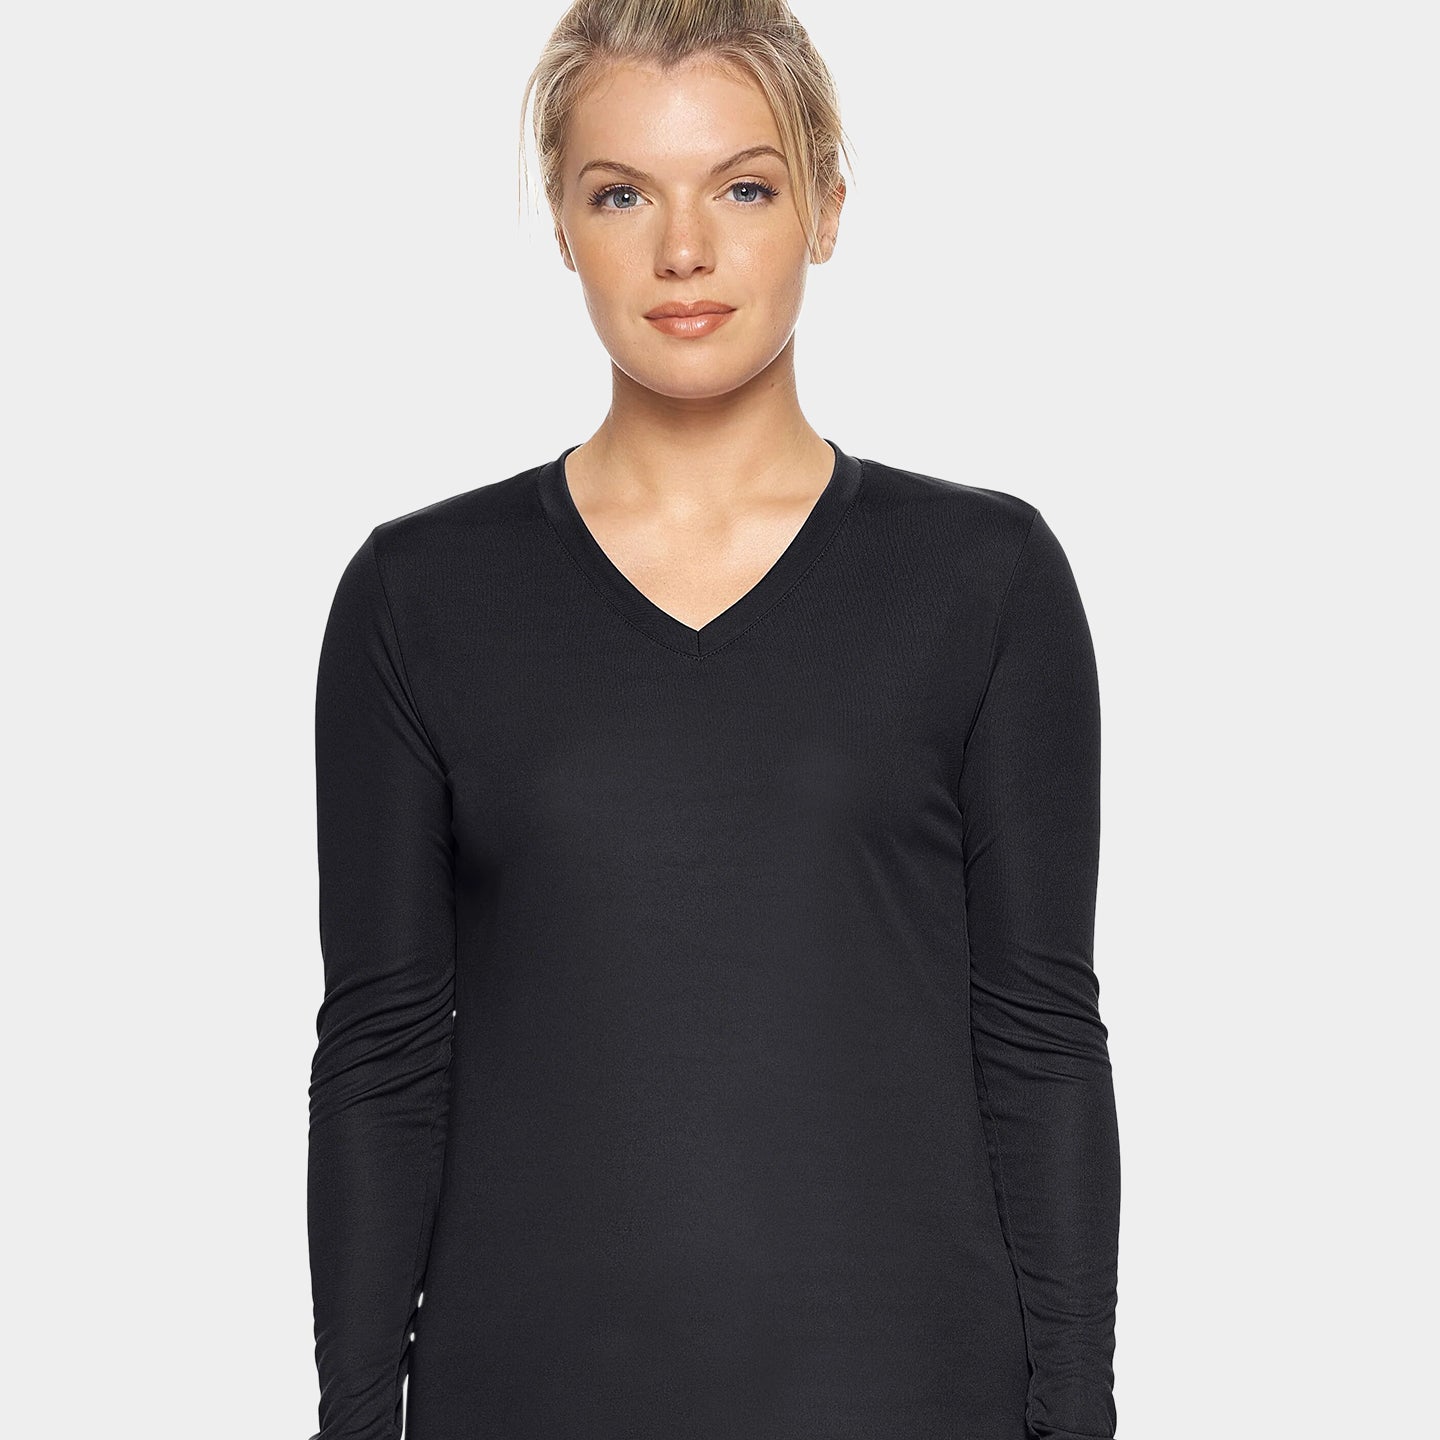 Expert Brand DriMax Women's Performance V-Neck Long Sleeve Shirt A1